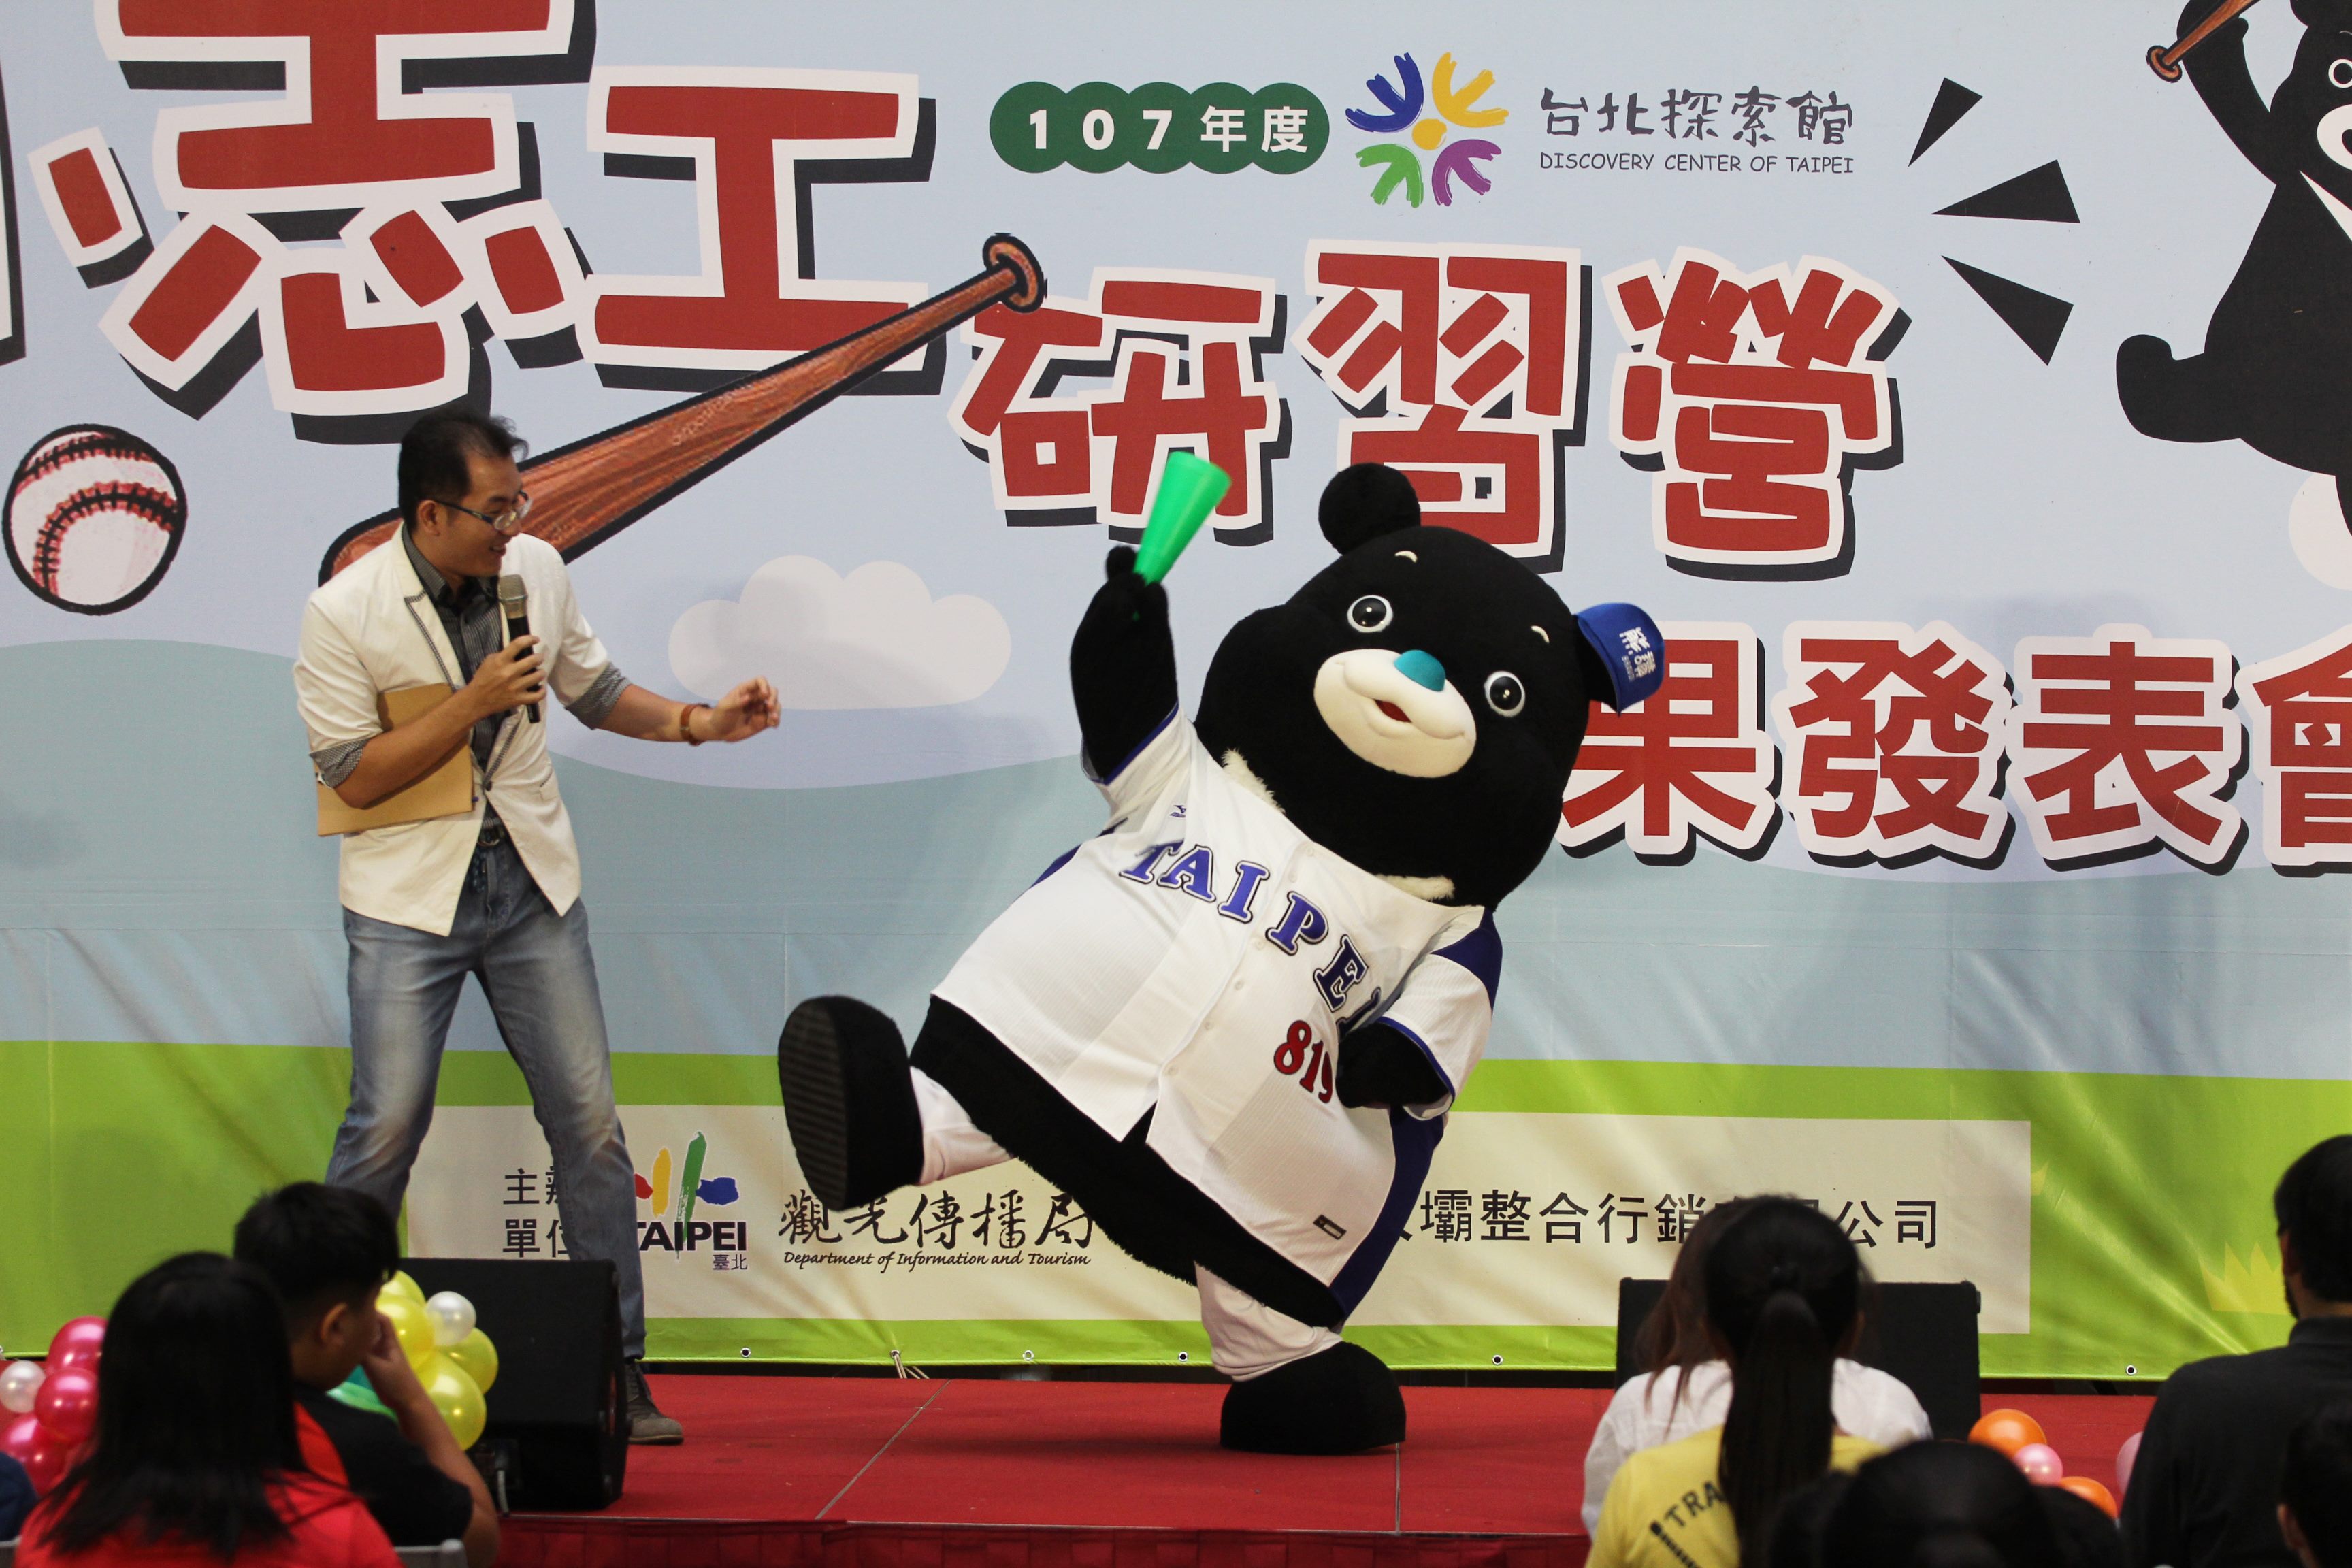 台北市吉祥物熊讚擔任研習營啦啦隊長陪小朋友們一起歡呼